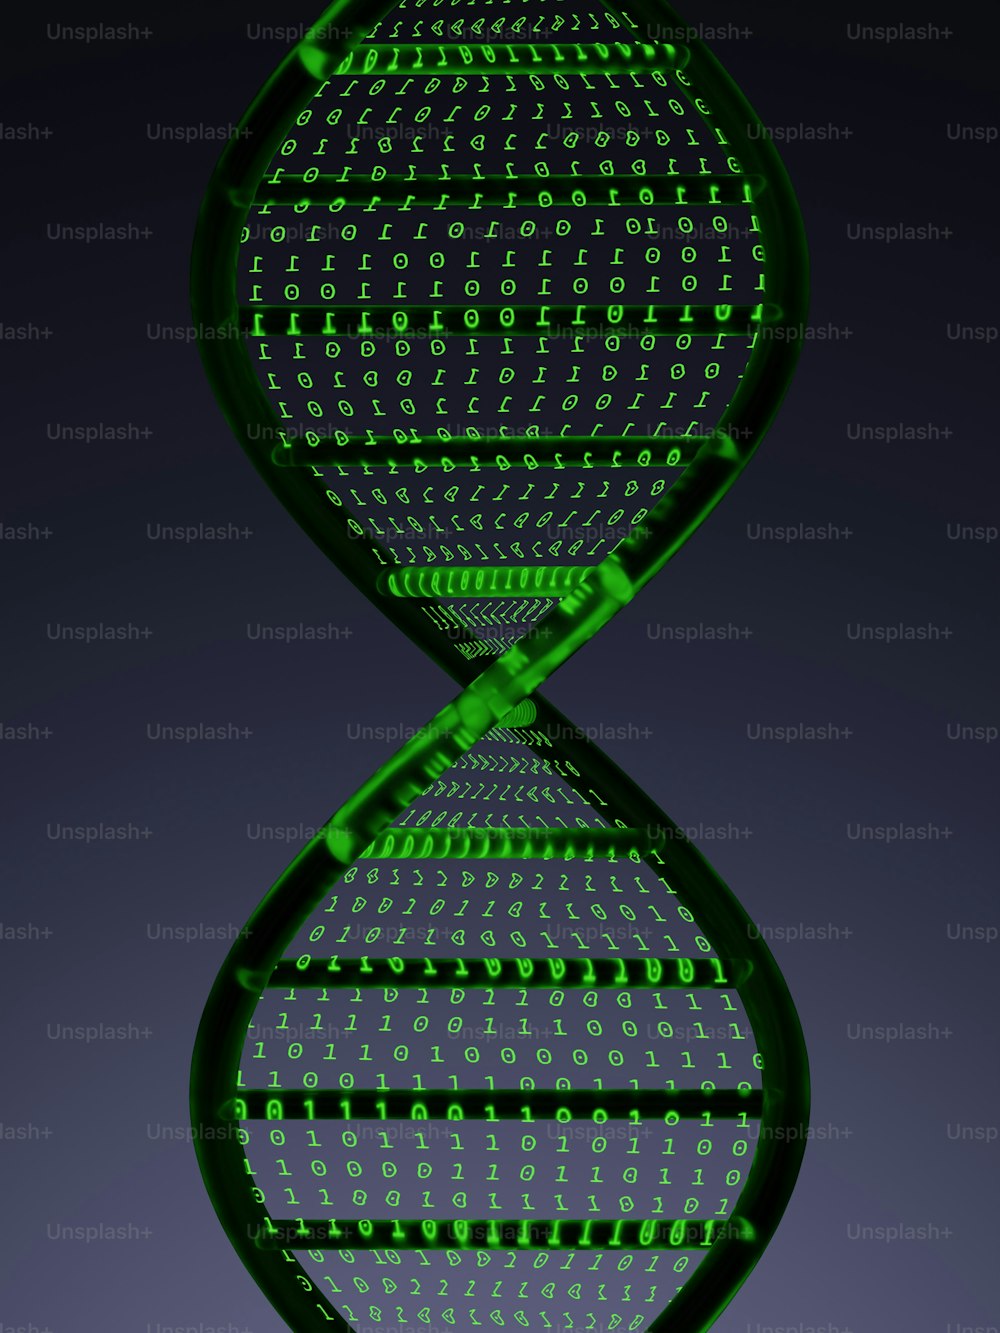 ヒト細胞の緑色二本鎖モデル